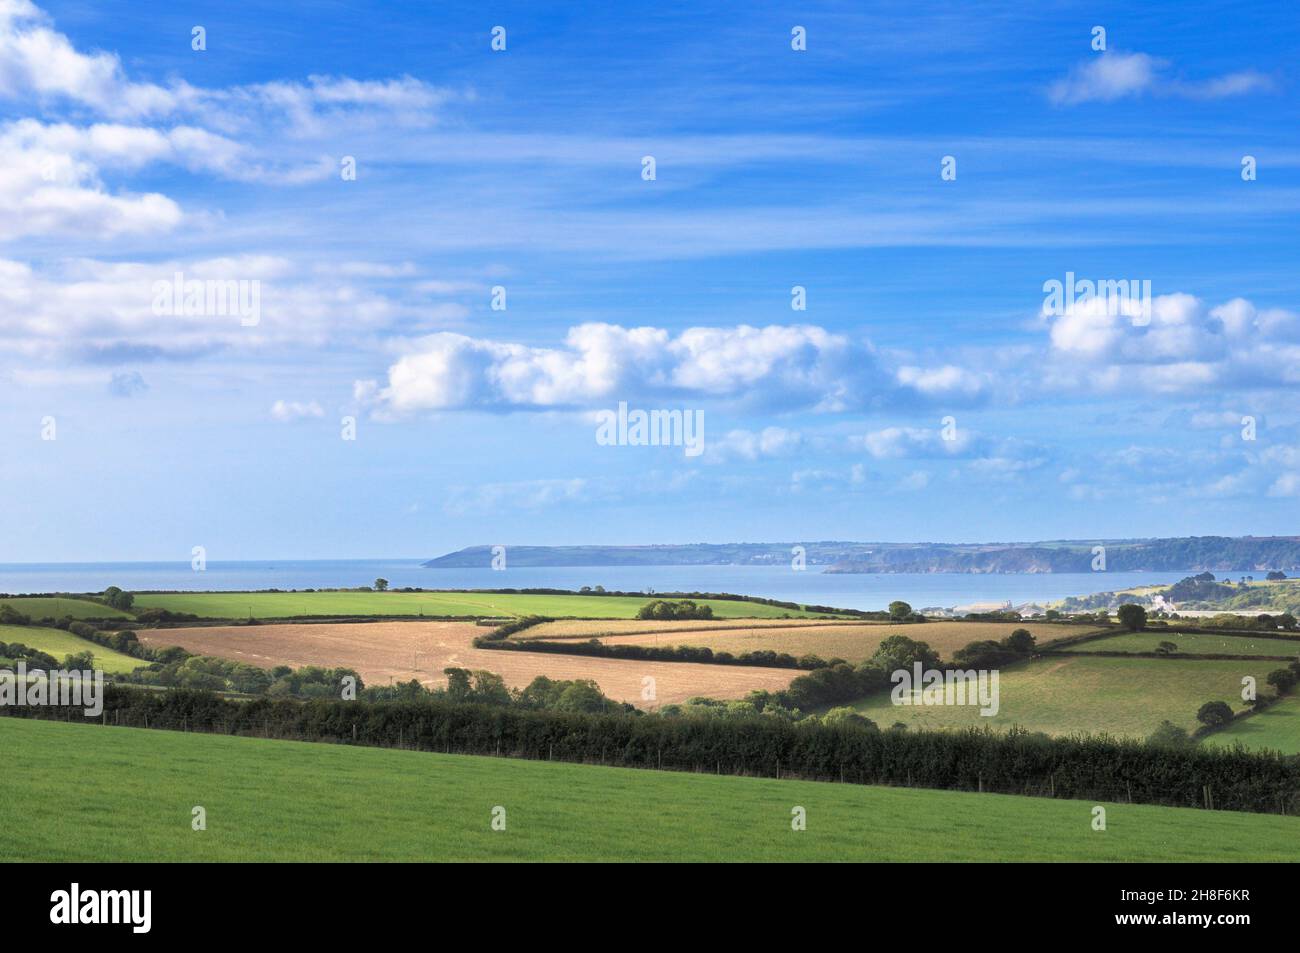 Una vista sencilla del campo con campos verdes, árboles, setos y semilleros en tierras de labranza en la costa de Cornualles, Cornwall, Inglaterra, Reino Unido. Foto de stock